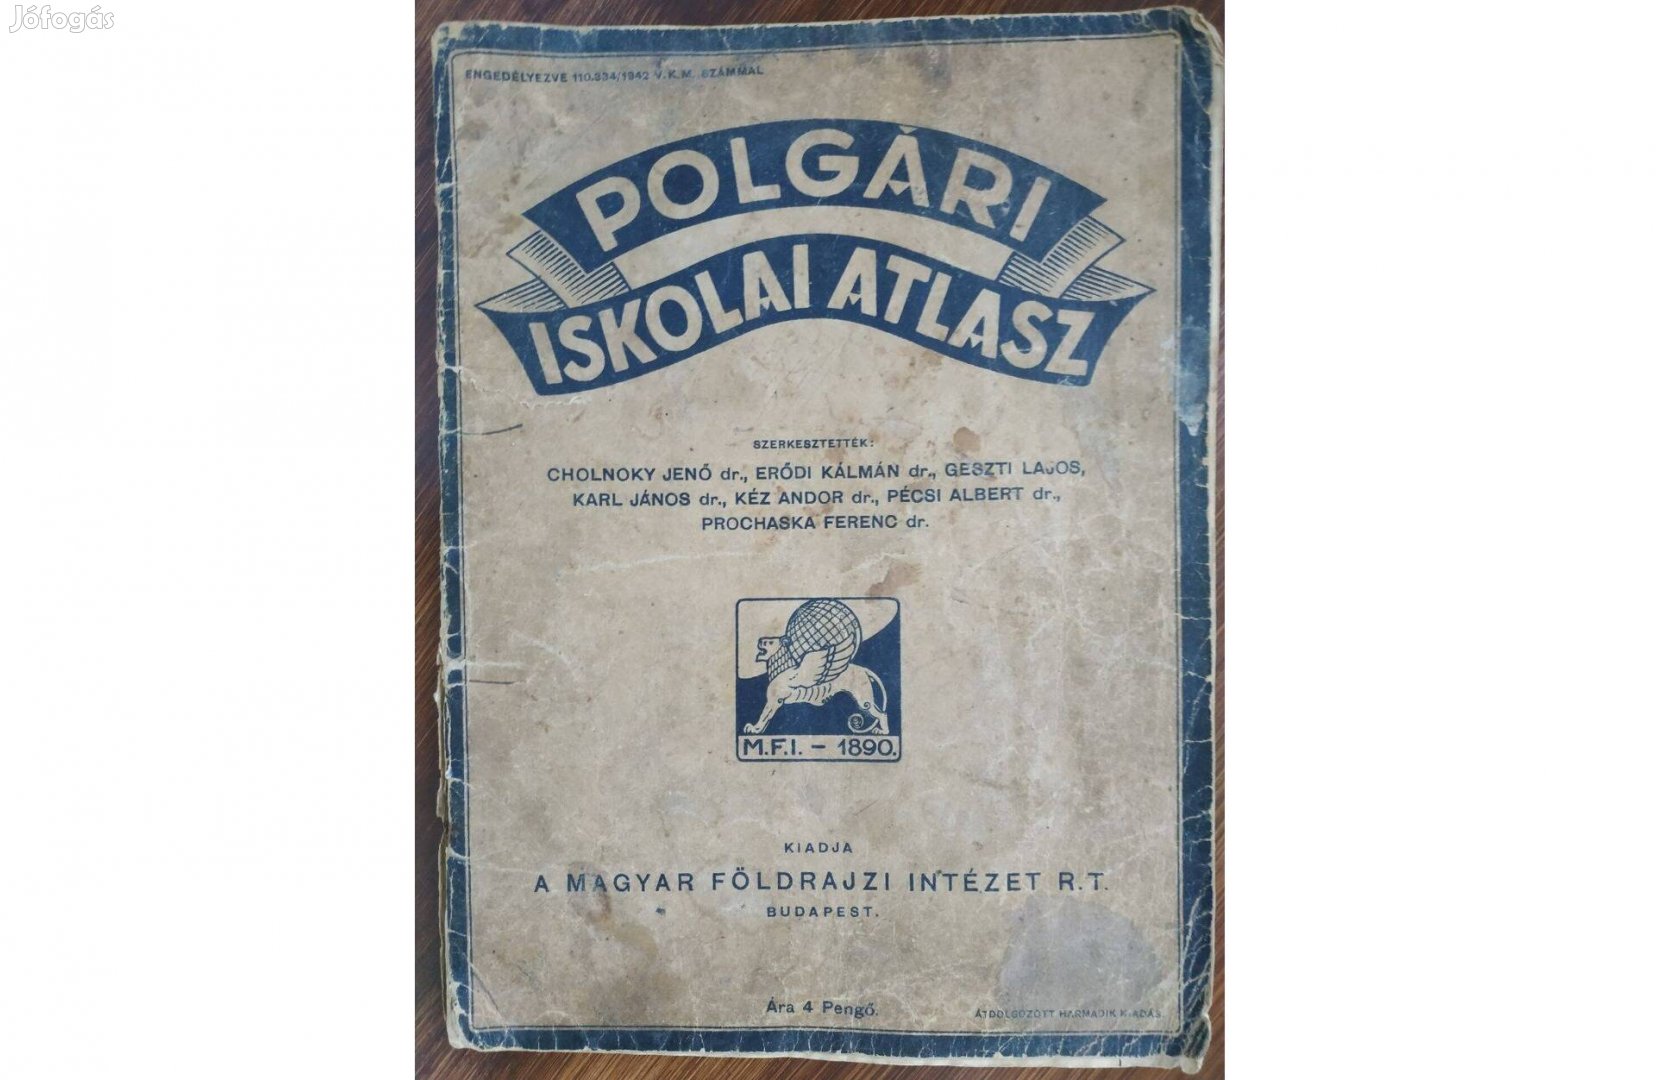 Polgári iskolai atlasz (Magyar Földrajzi Intézet R.T. 1942)